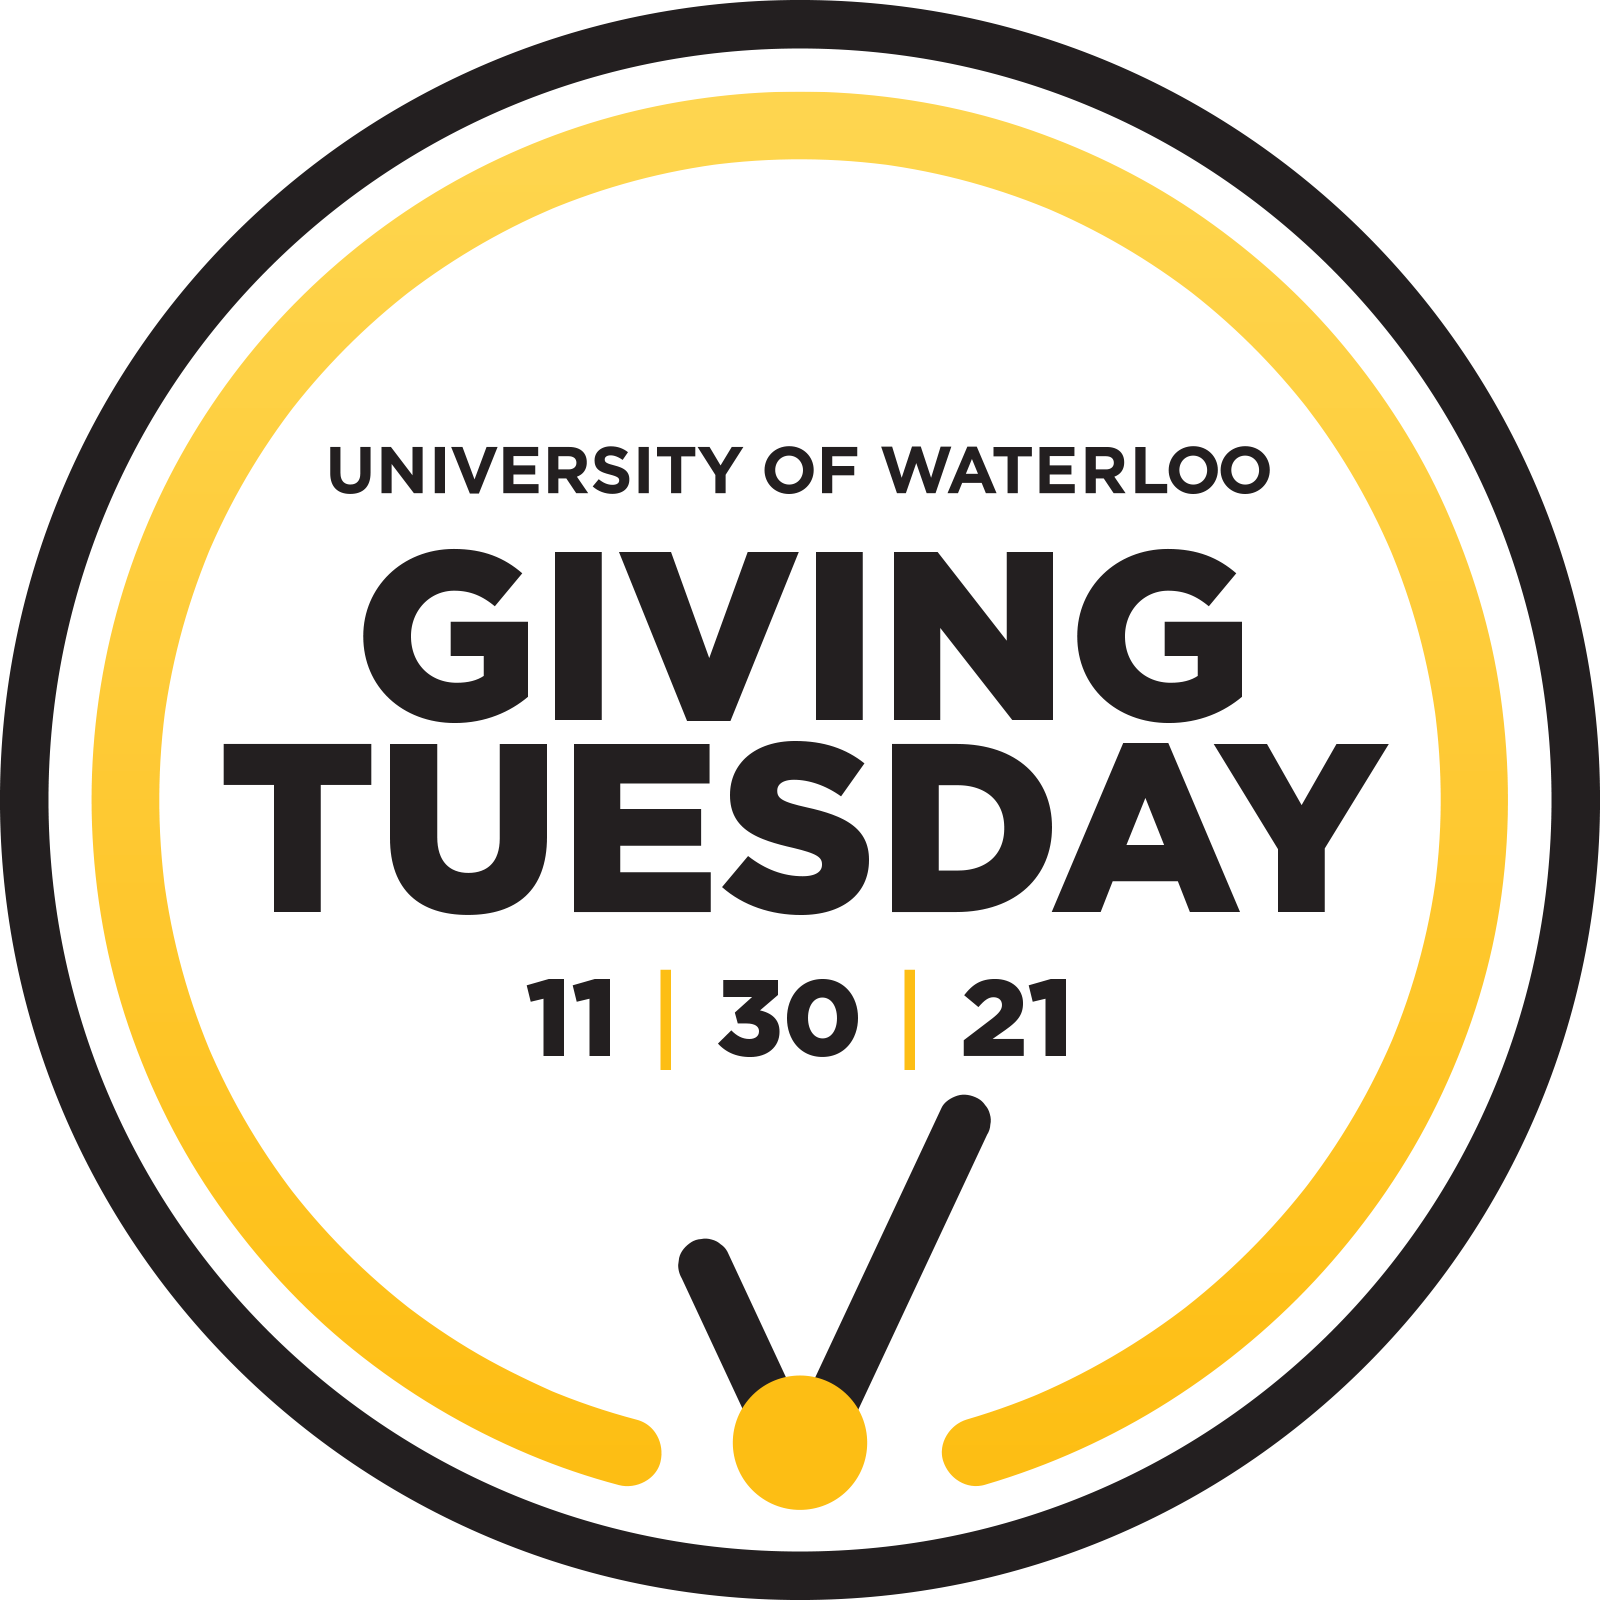 University of Waterloo Giving Tuesday logo